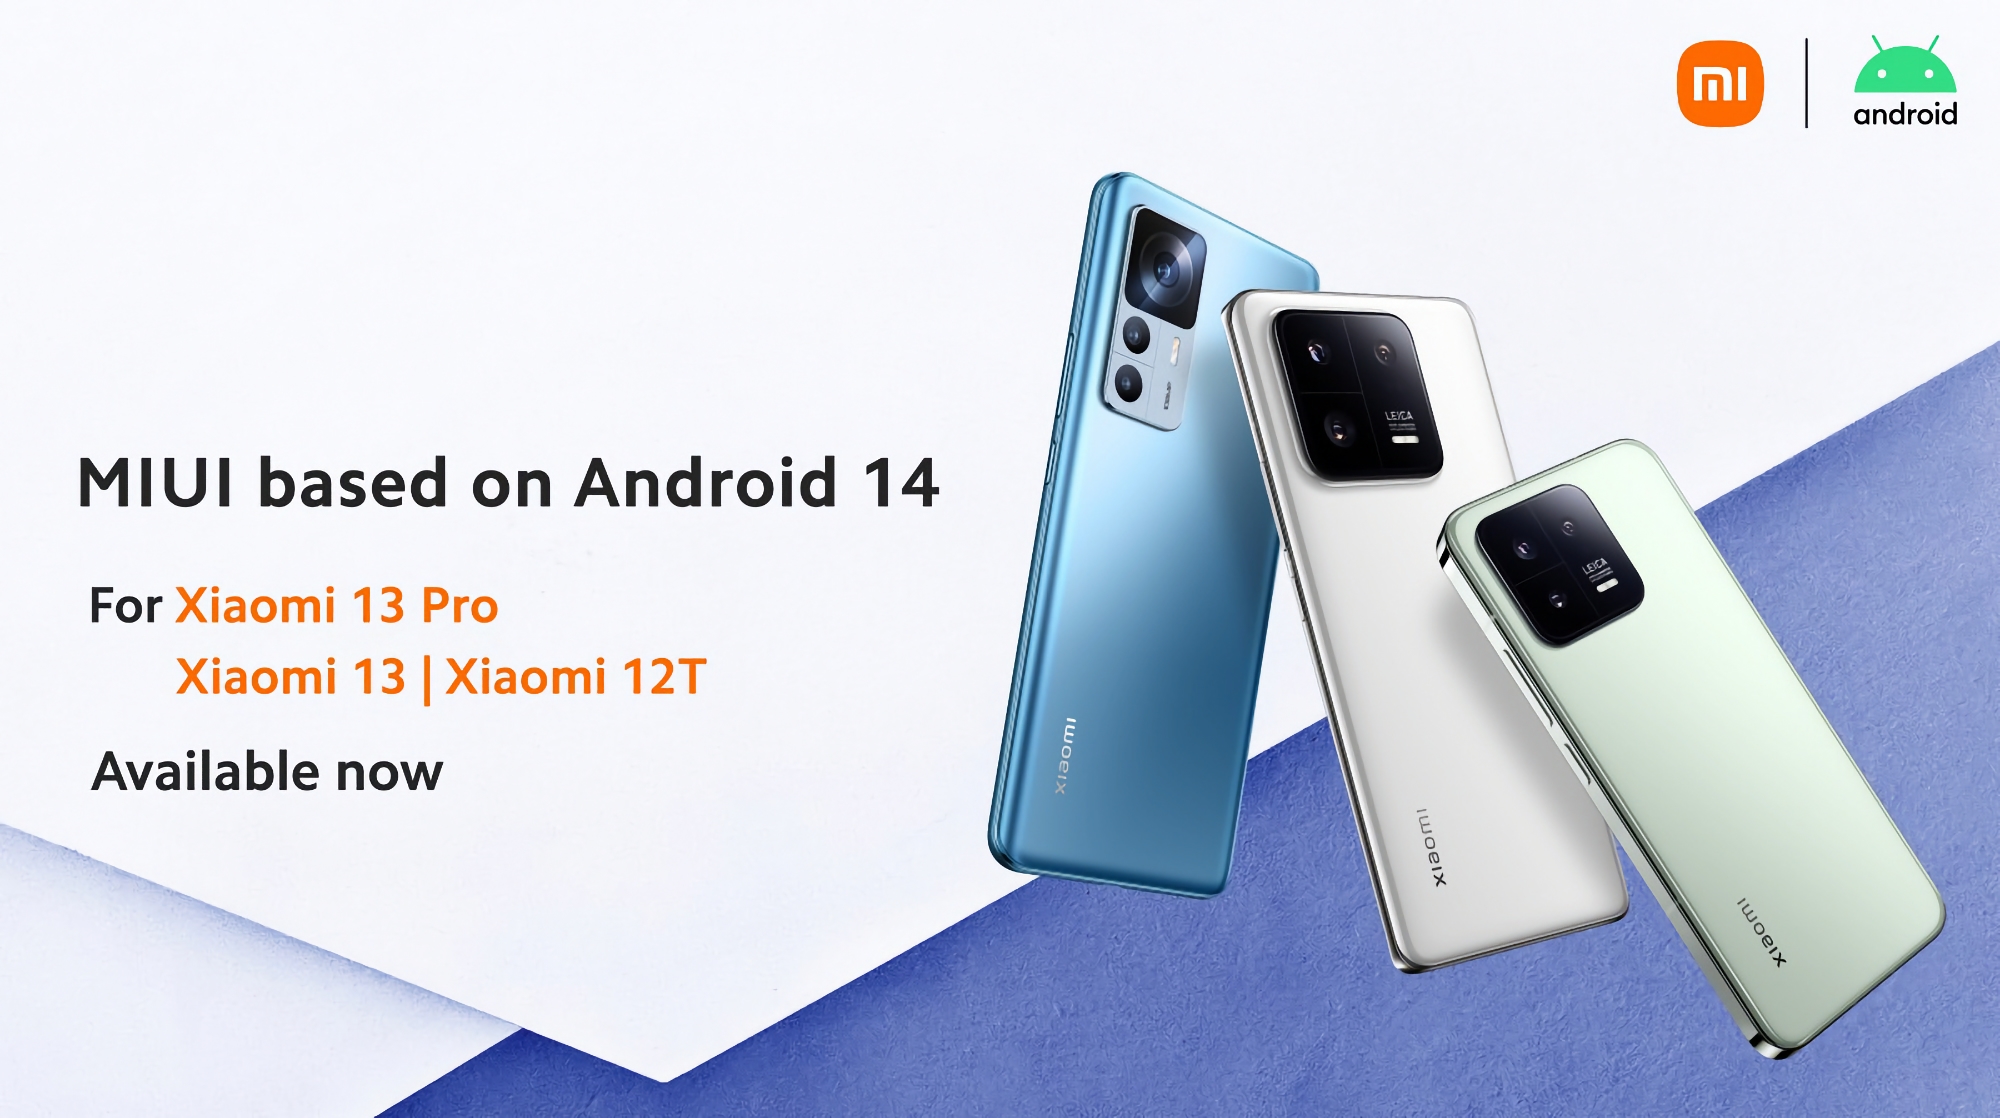 Po smartfonach Google Pixel: Xiaomi 13, Xiaomi 13 Pro i Xiaomi 12T zaczęły otrzymywać stabilną wersję Androida 14